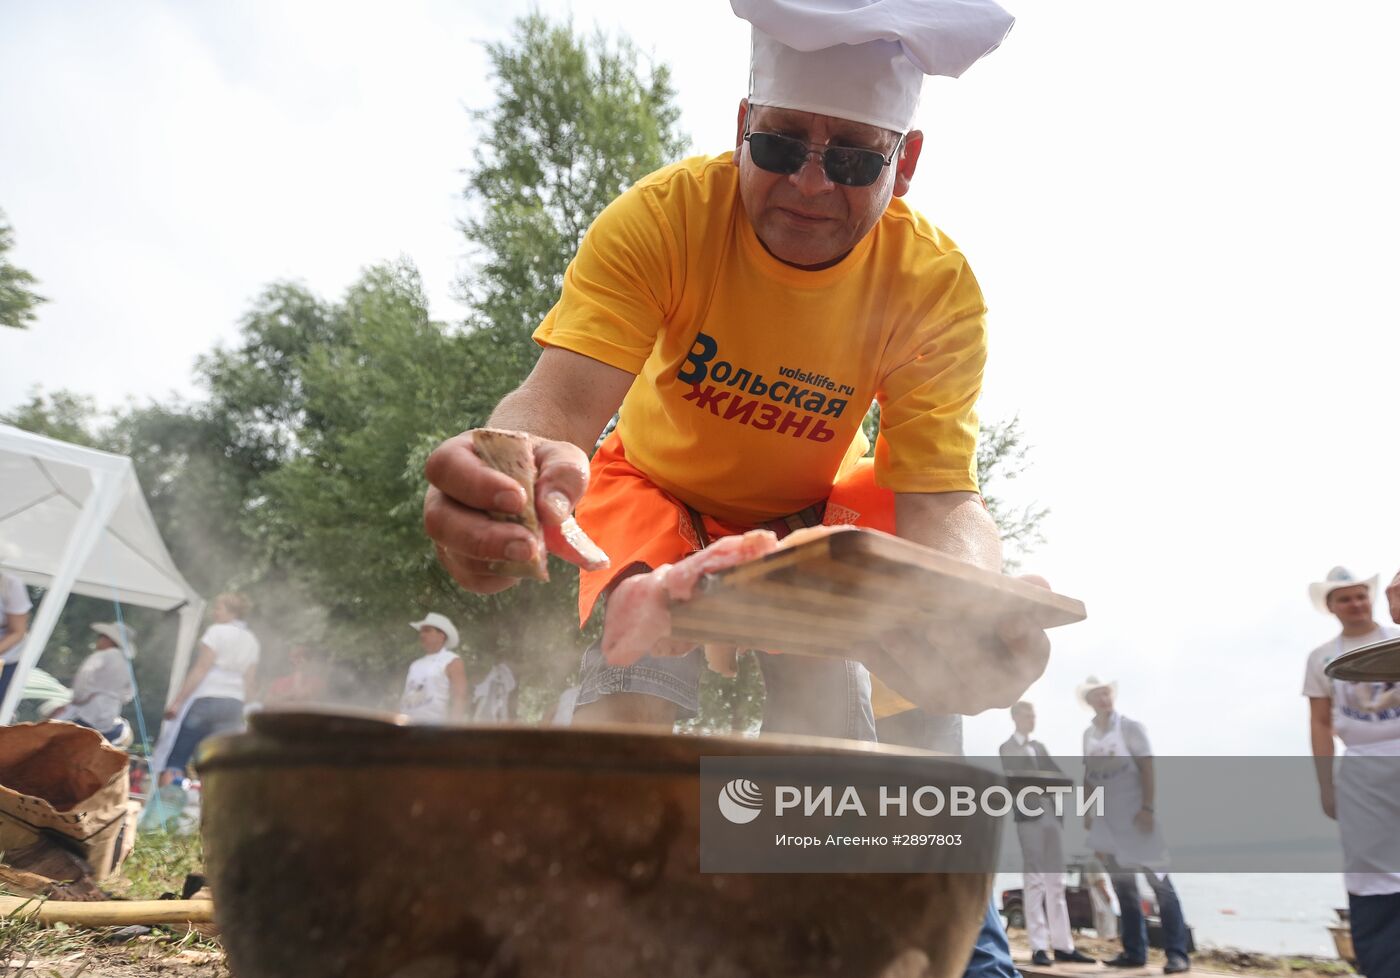 Фестиваль ухи в Саратовской области